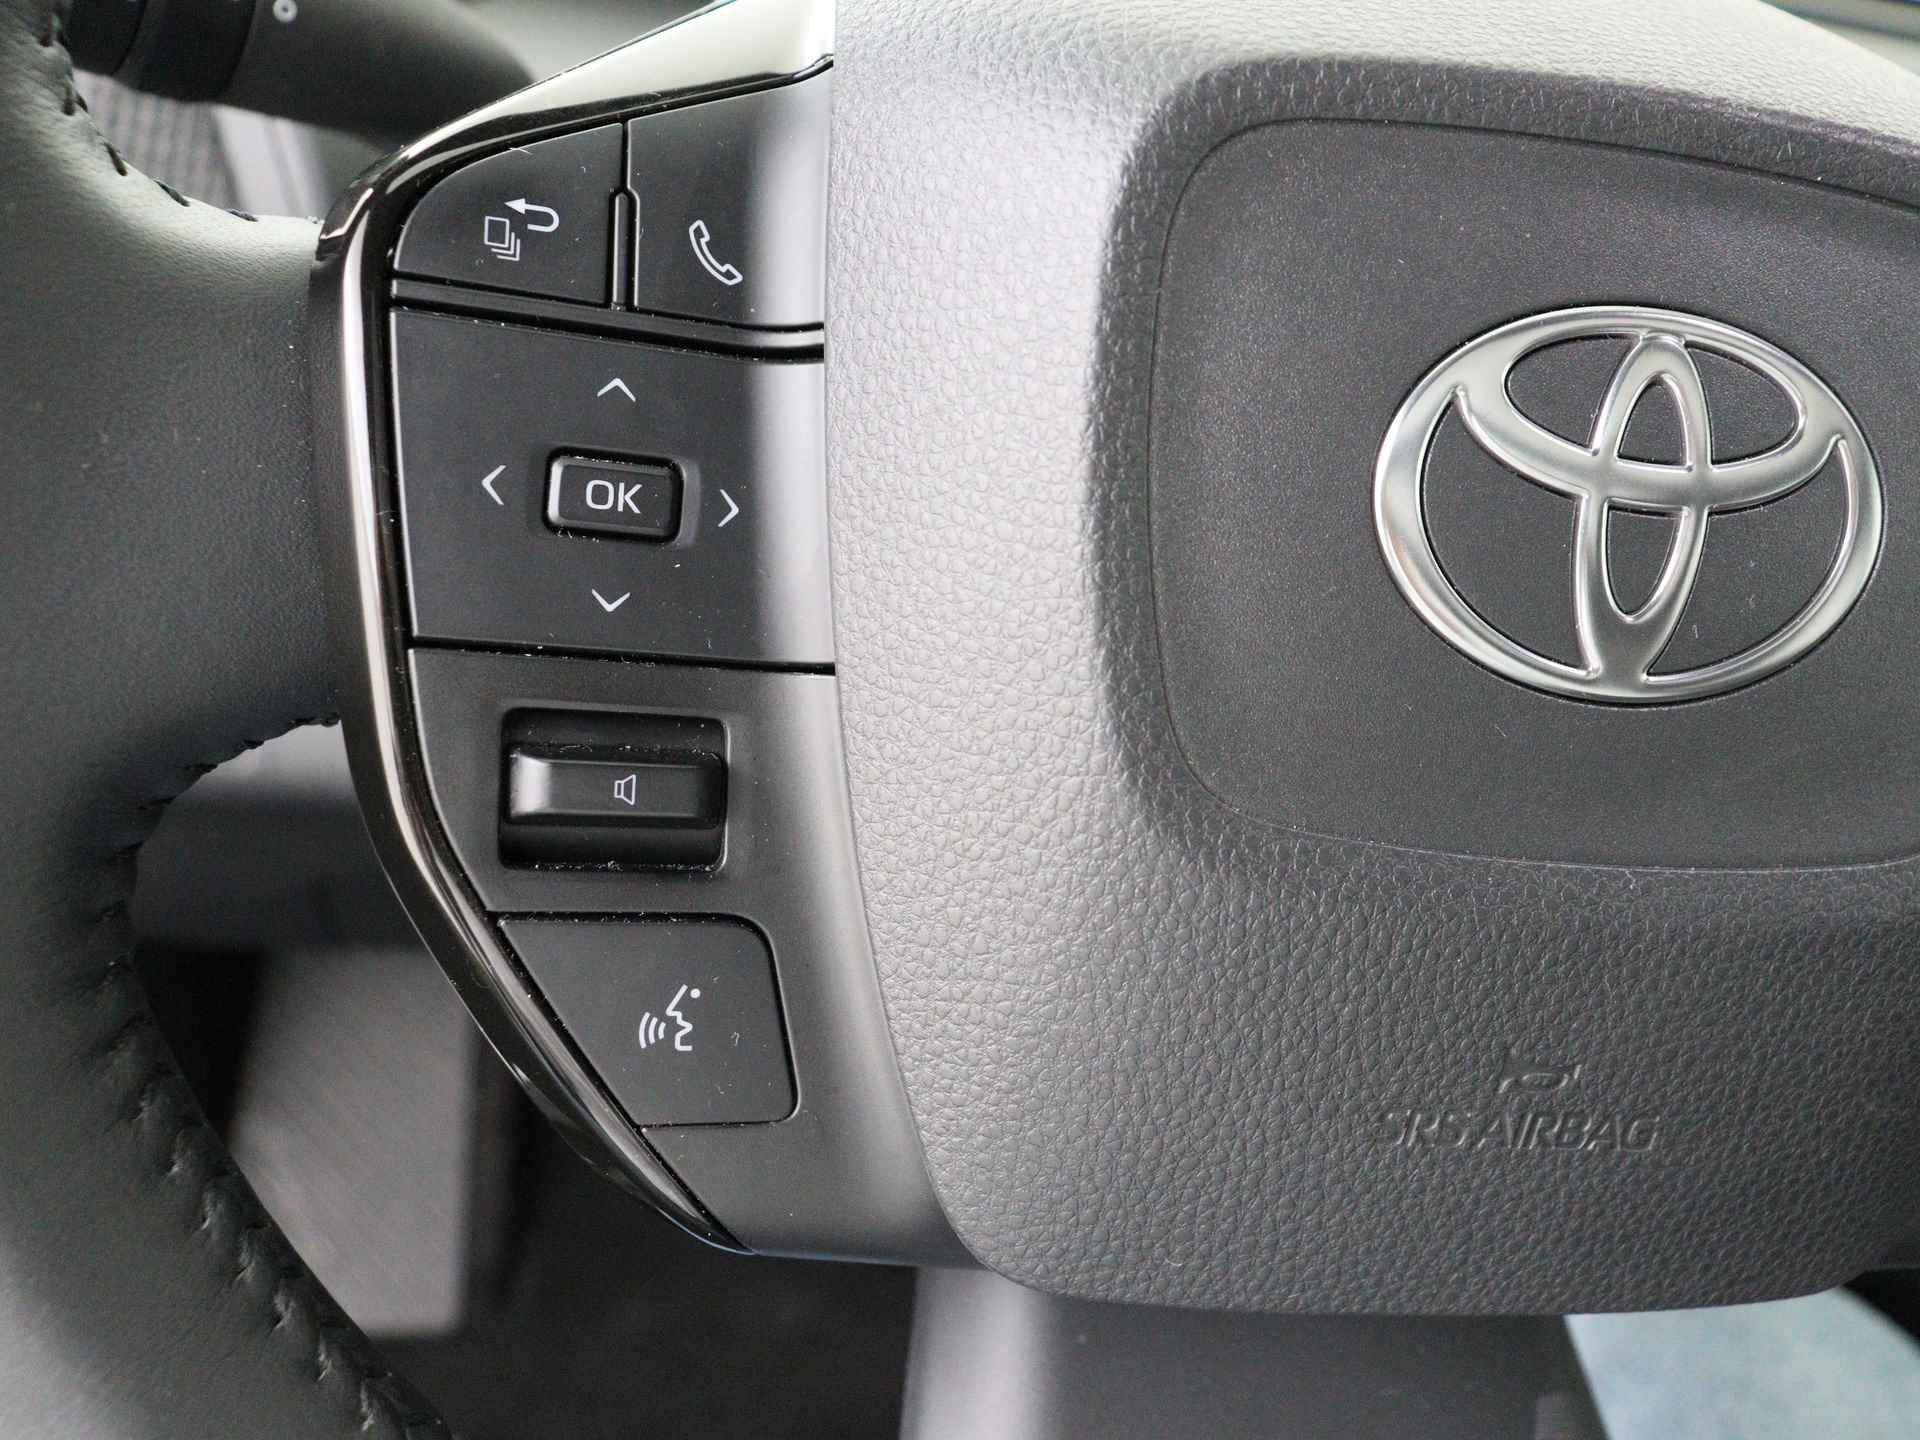 Toyota Bz4x Launch Edition Premium Bi-Tone uitvoering | Navigatie | Stoel&stuur verwarming | My T app | Panoramadak | Wegenbelasting vrij | Subsidie €2000,- aanvraag mogelijk. - 18/48